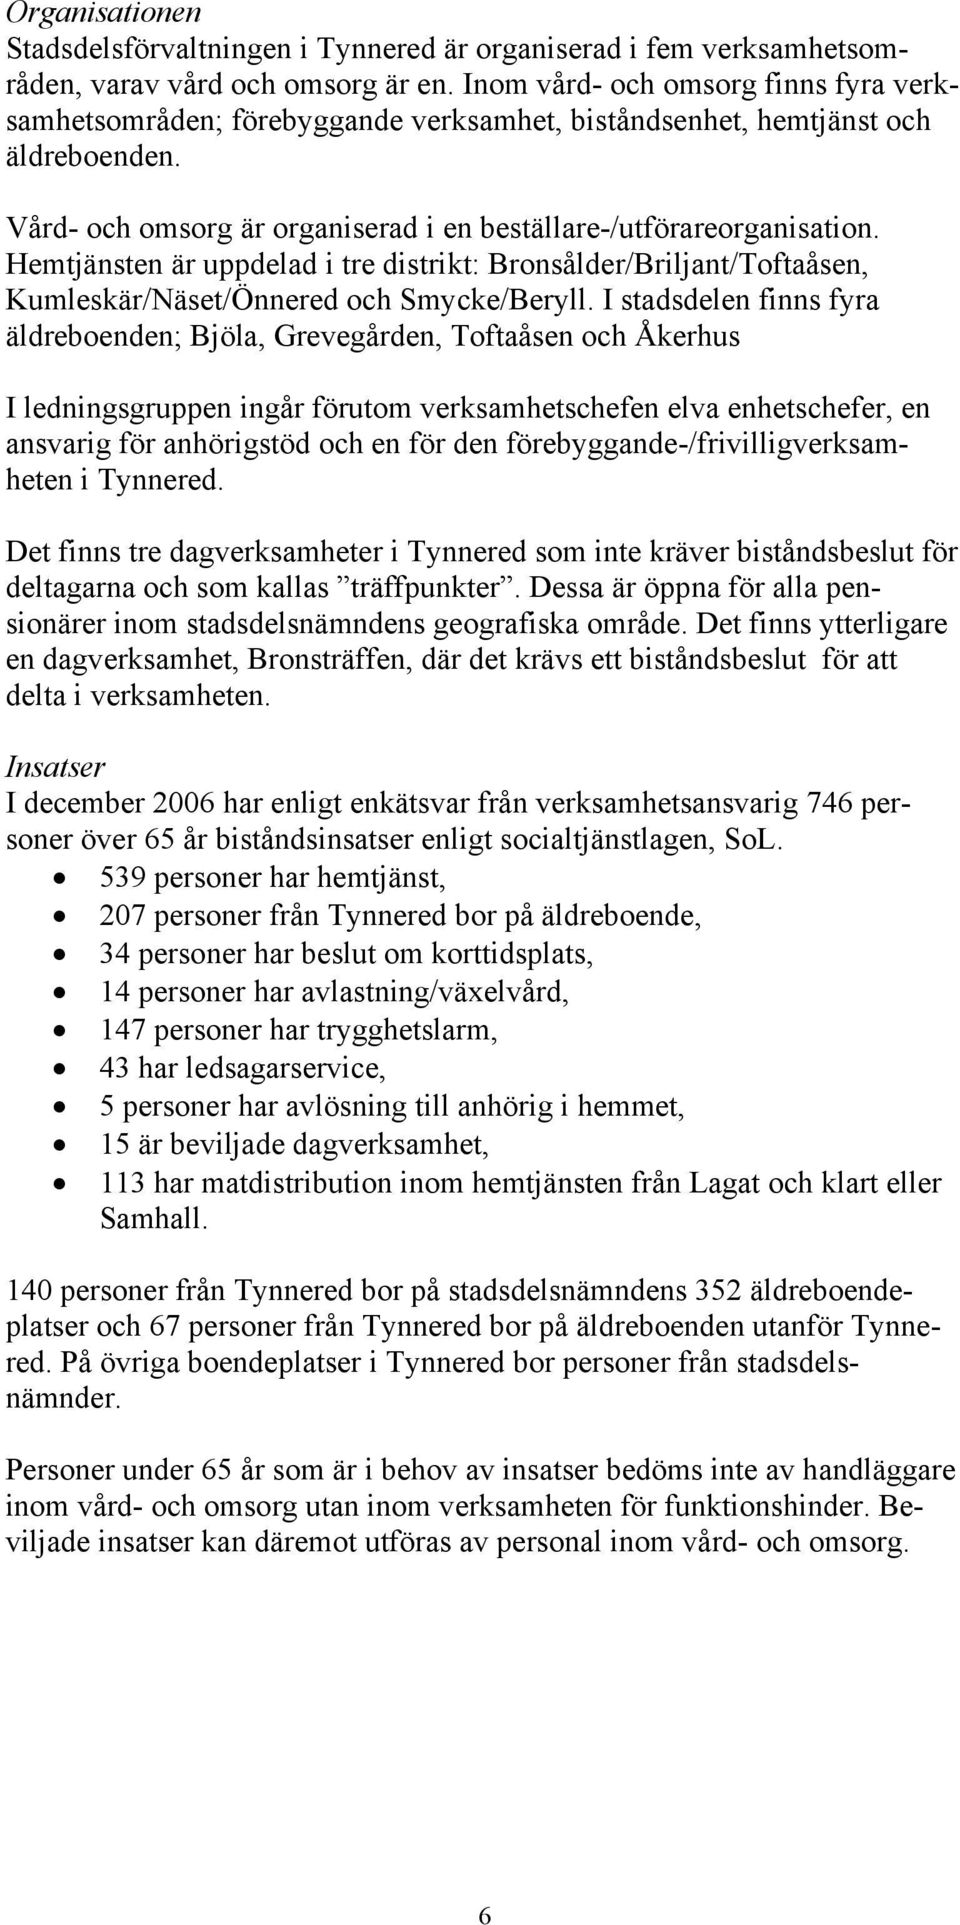 Hemtjänsten är uppdelad i tre distrikt: Bronsålder/Briljant/Toftaåsen, Kumleskär/Näset/Önnered och Smycke/Beryll.